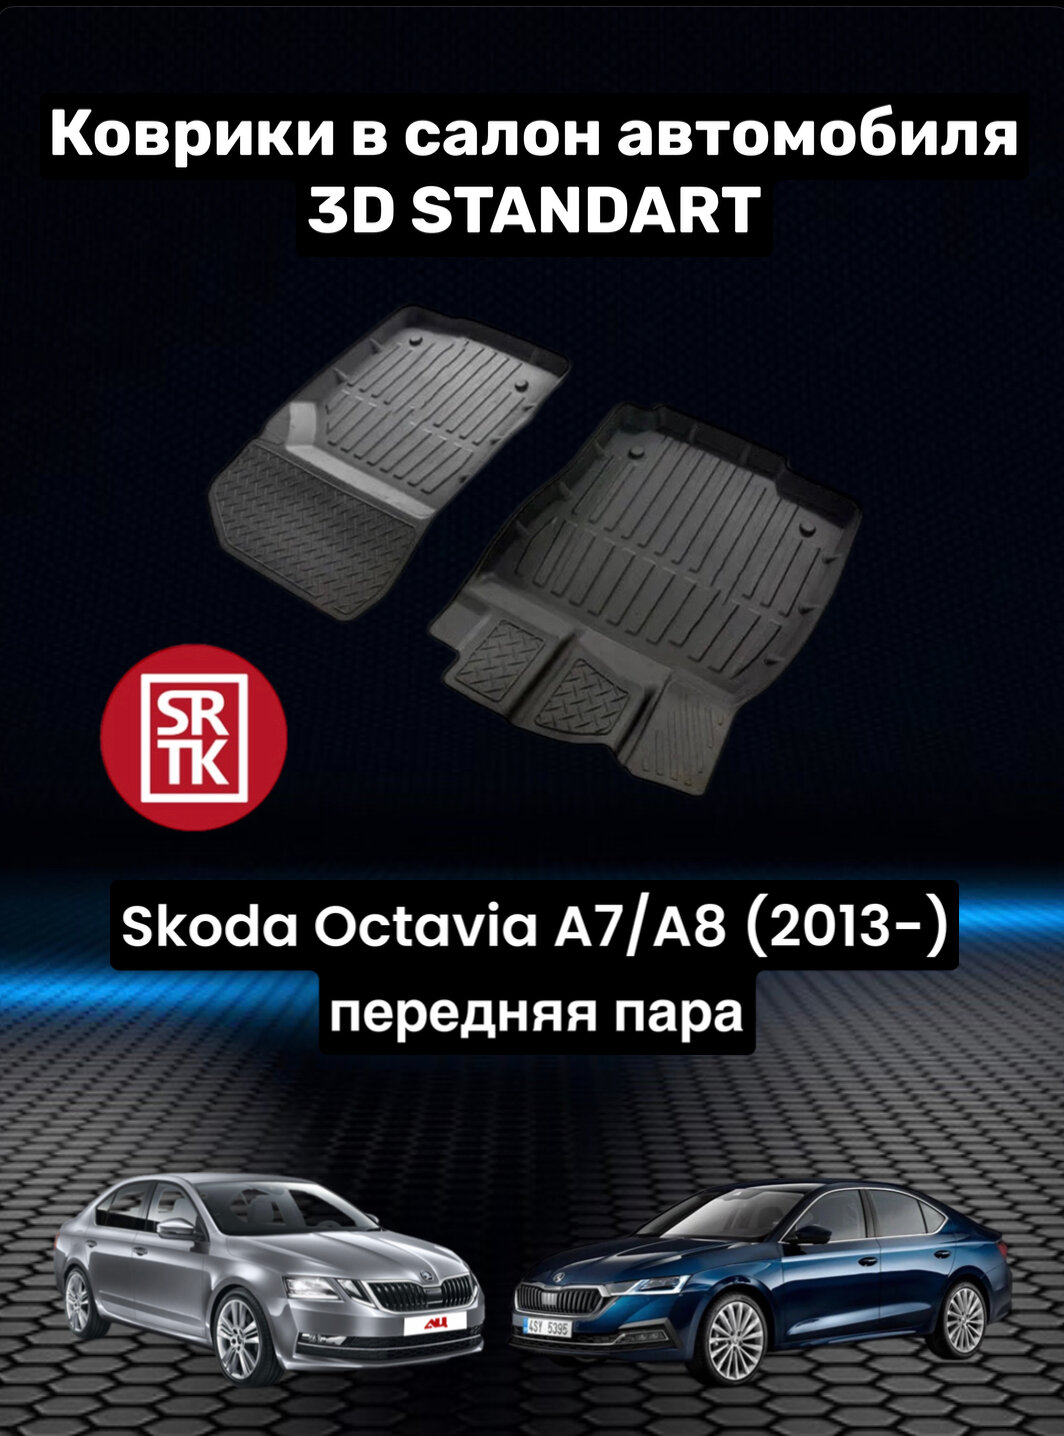 Ковры резиновые в салон для Шкода Октавия А7/А8/Skoda Octavia-A7/A8 (2013-)низкий борт 3D STANDART SRTK (Саранск) передняя пара в салон